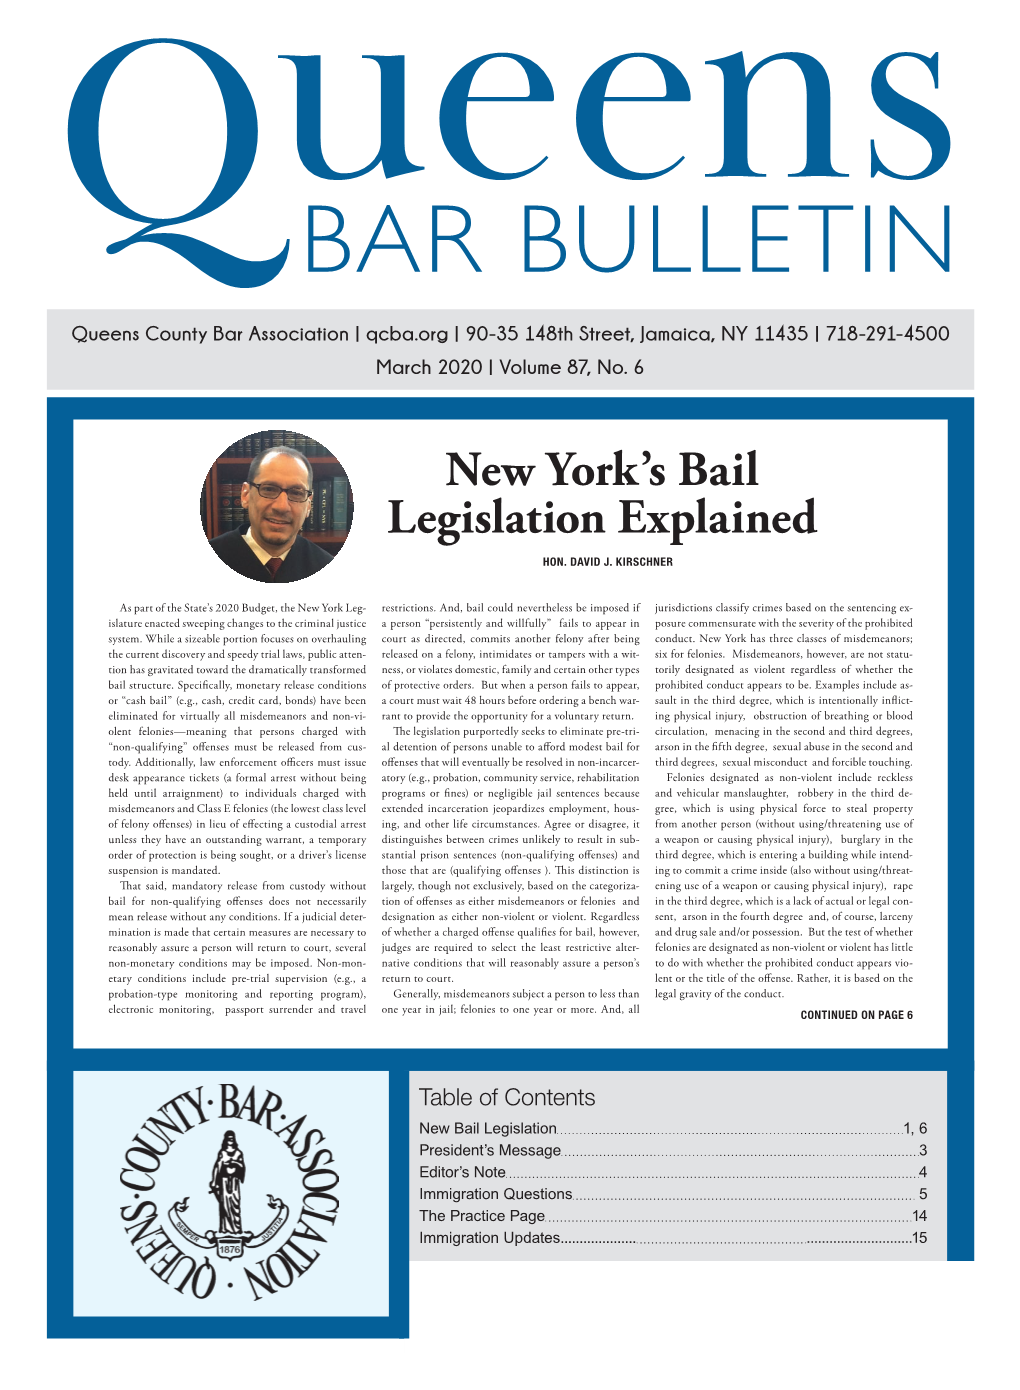 New York's Bail Legislation Explained